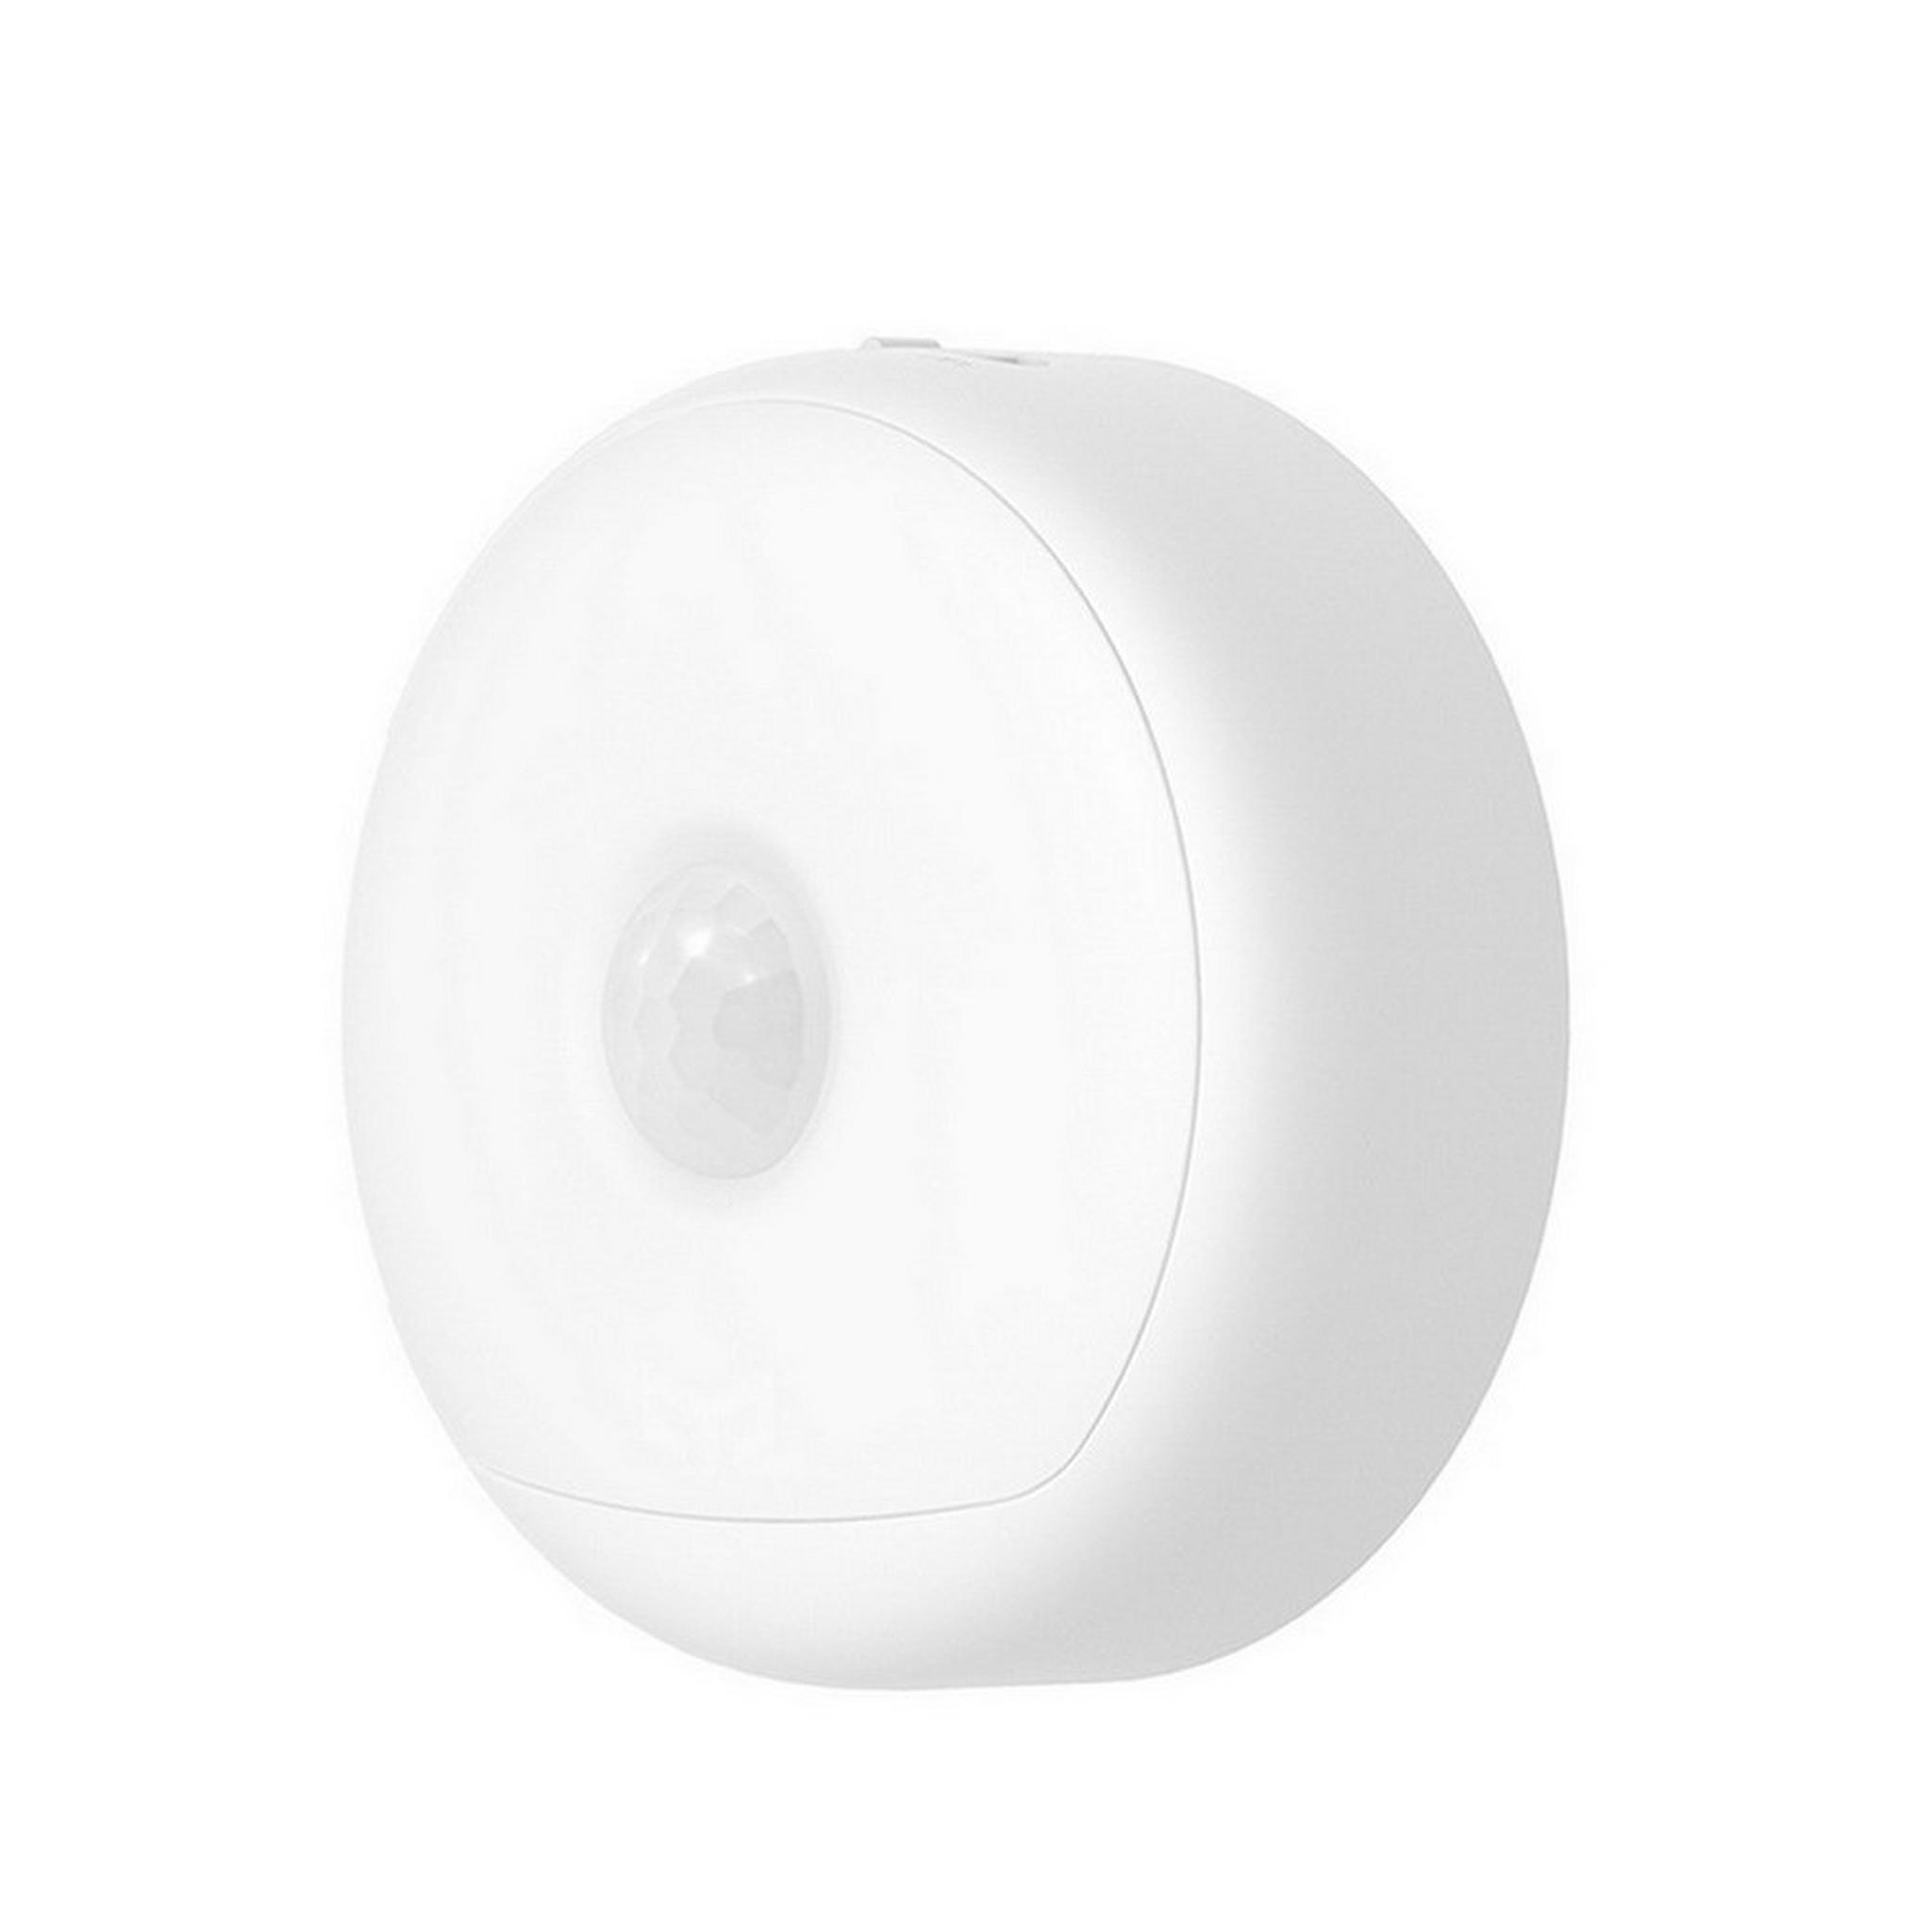 Yeelight Rechargeable Motion Sensor Nightlight, YLYD01YL - White